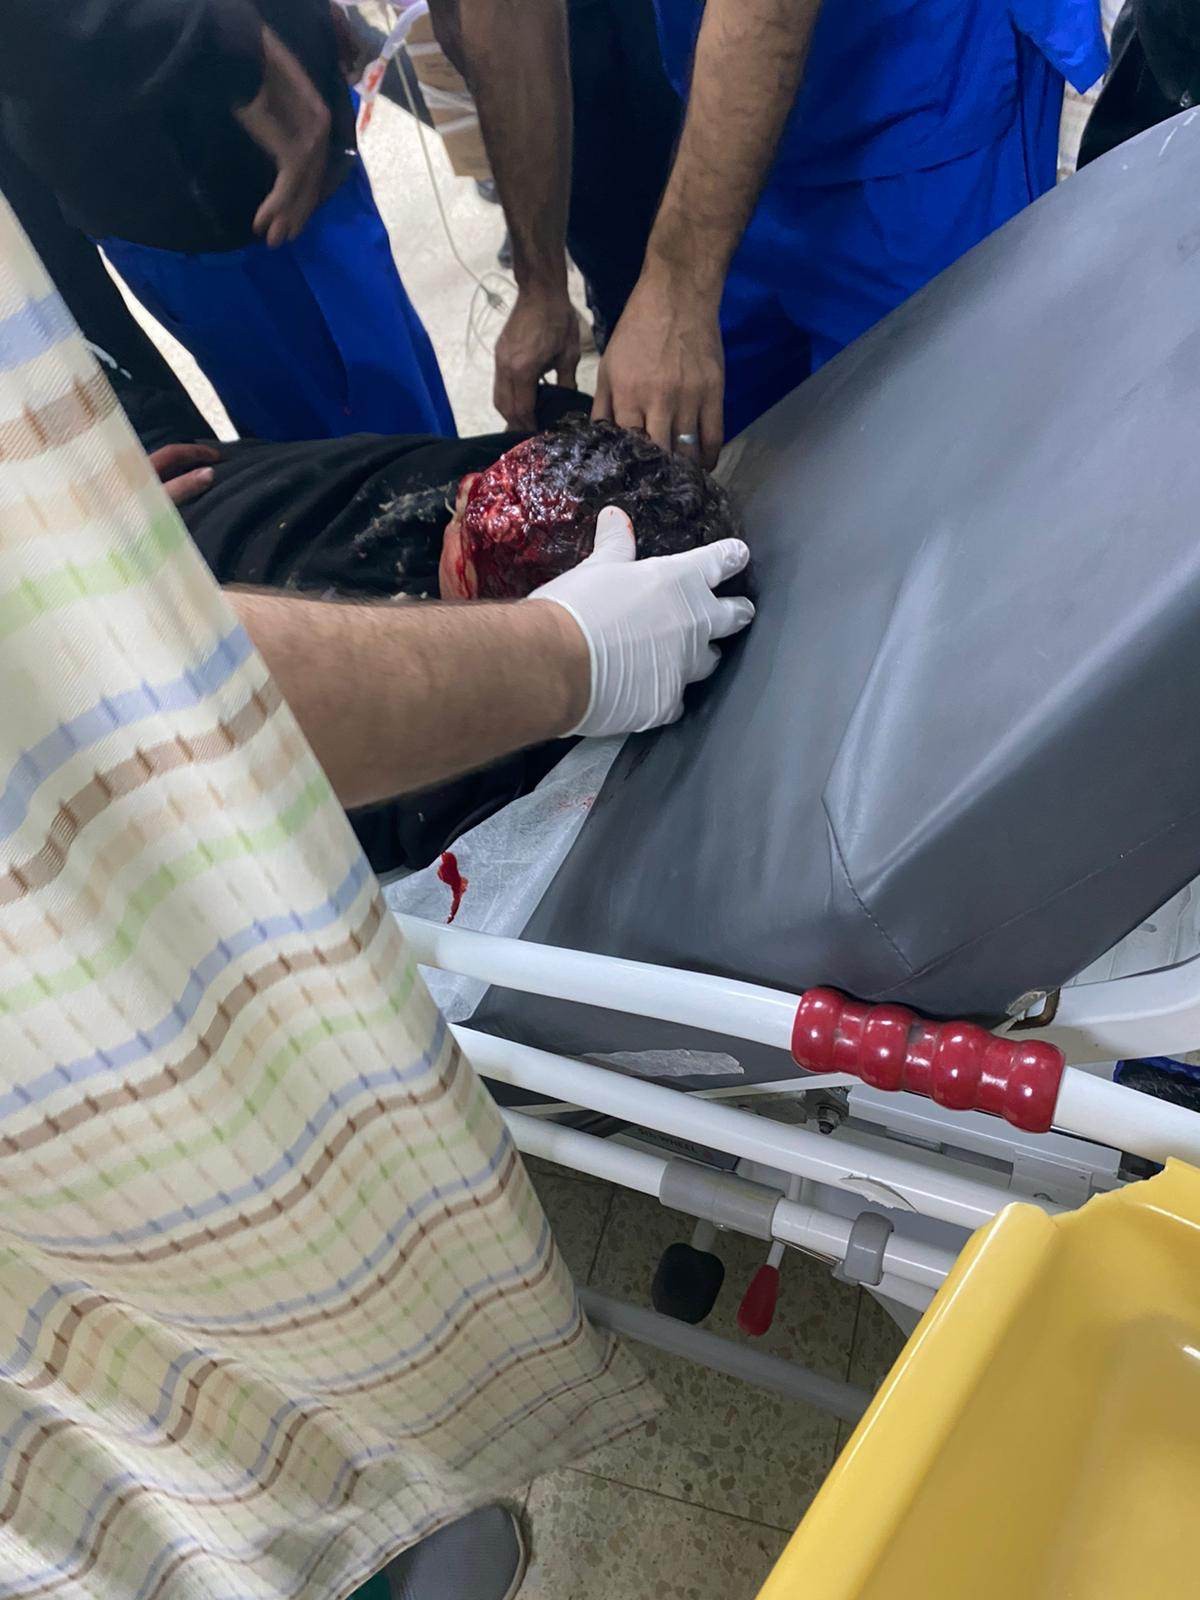 إصابة حرجة لفتى خلال مواجهات مع الاحتلال في مخيم عقبة جبر بأريحا